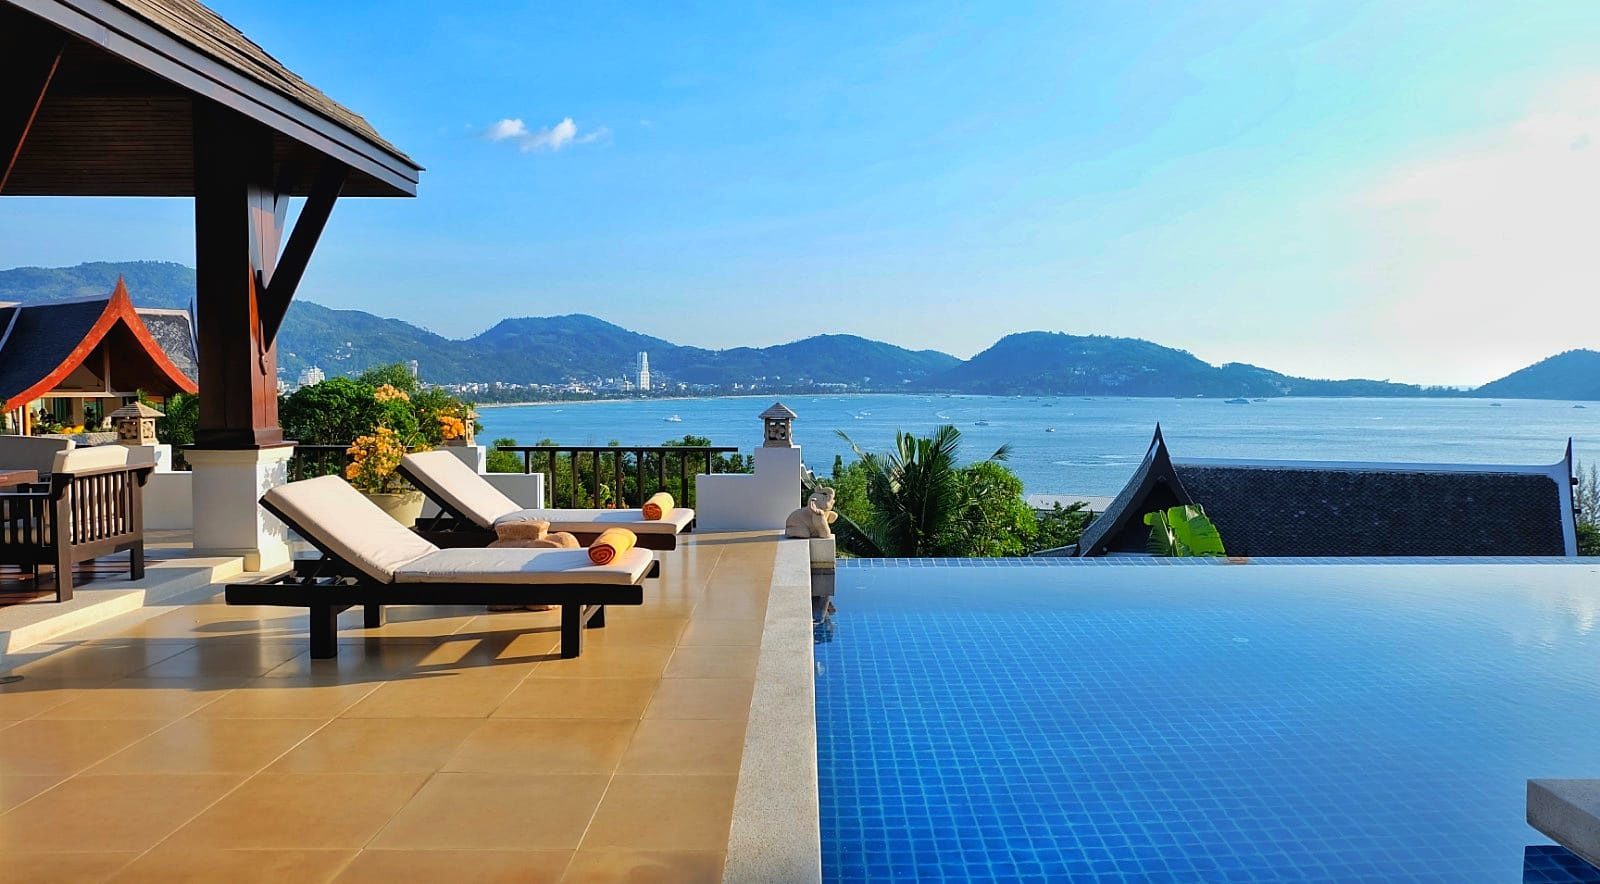 Seaview Villa for rent in Phuket         ⭐⭐⭐⭐⭐